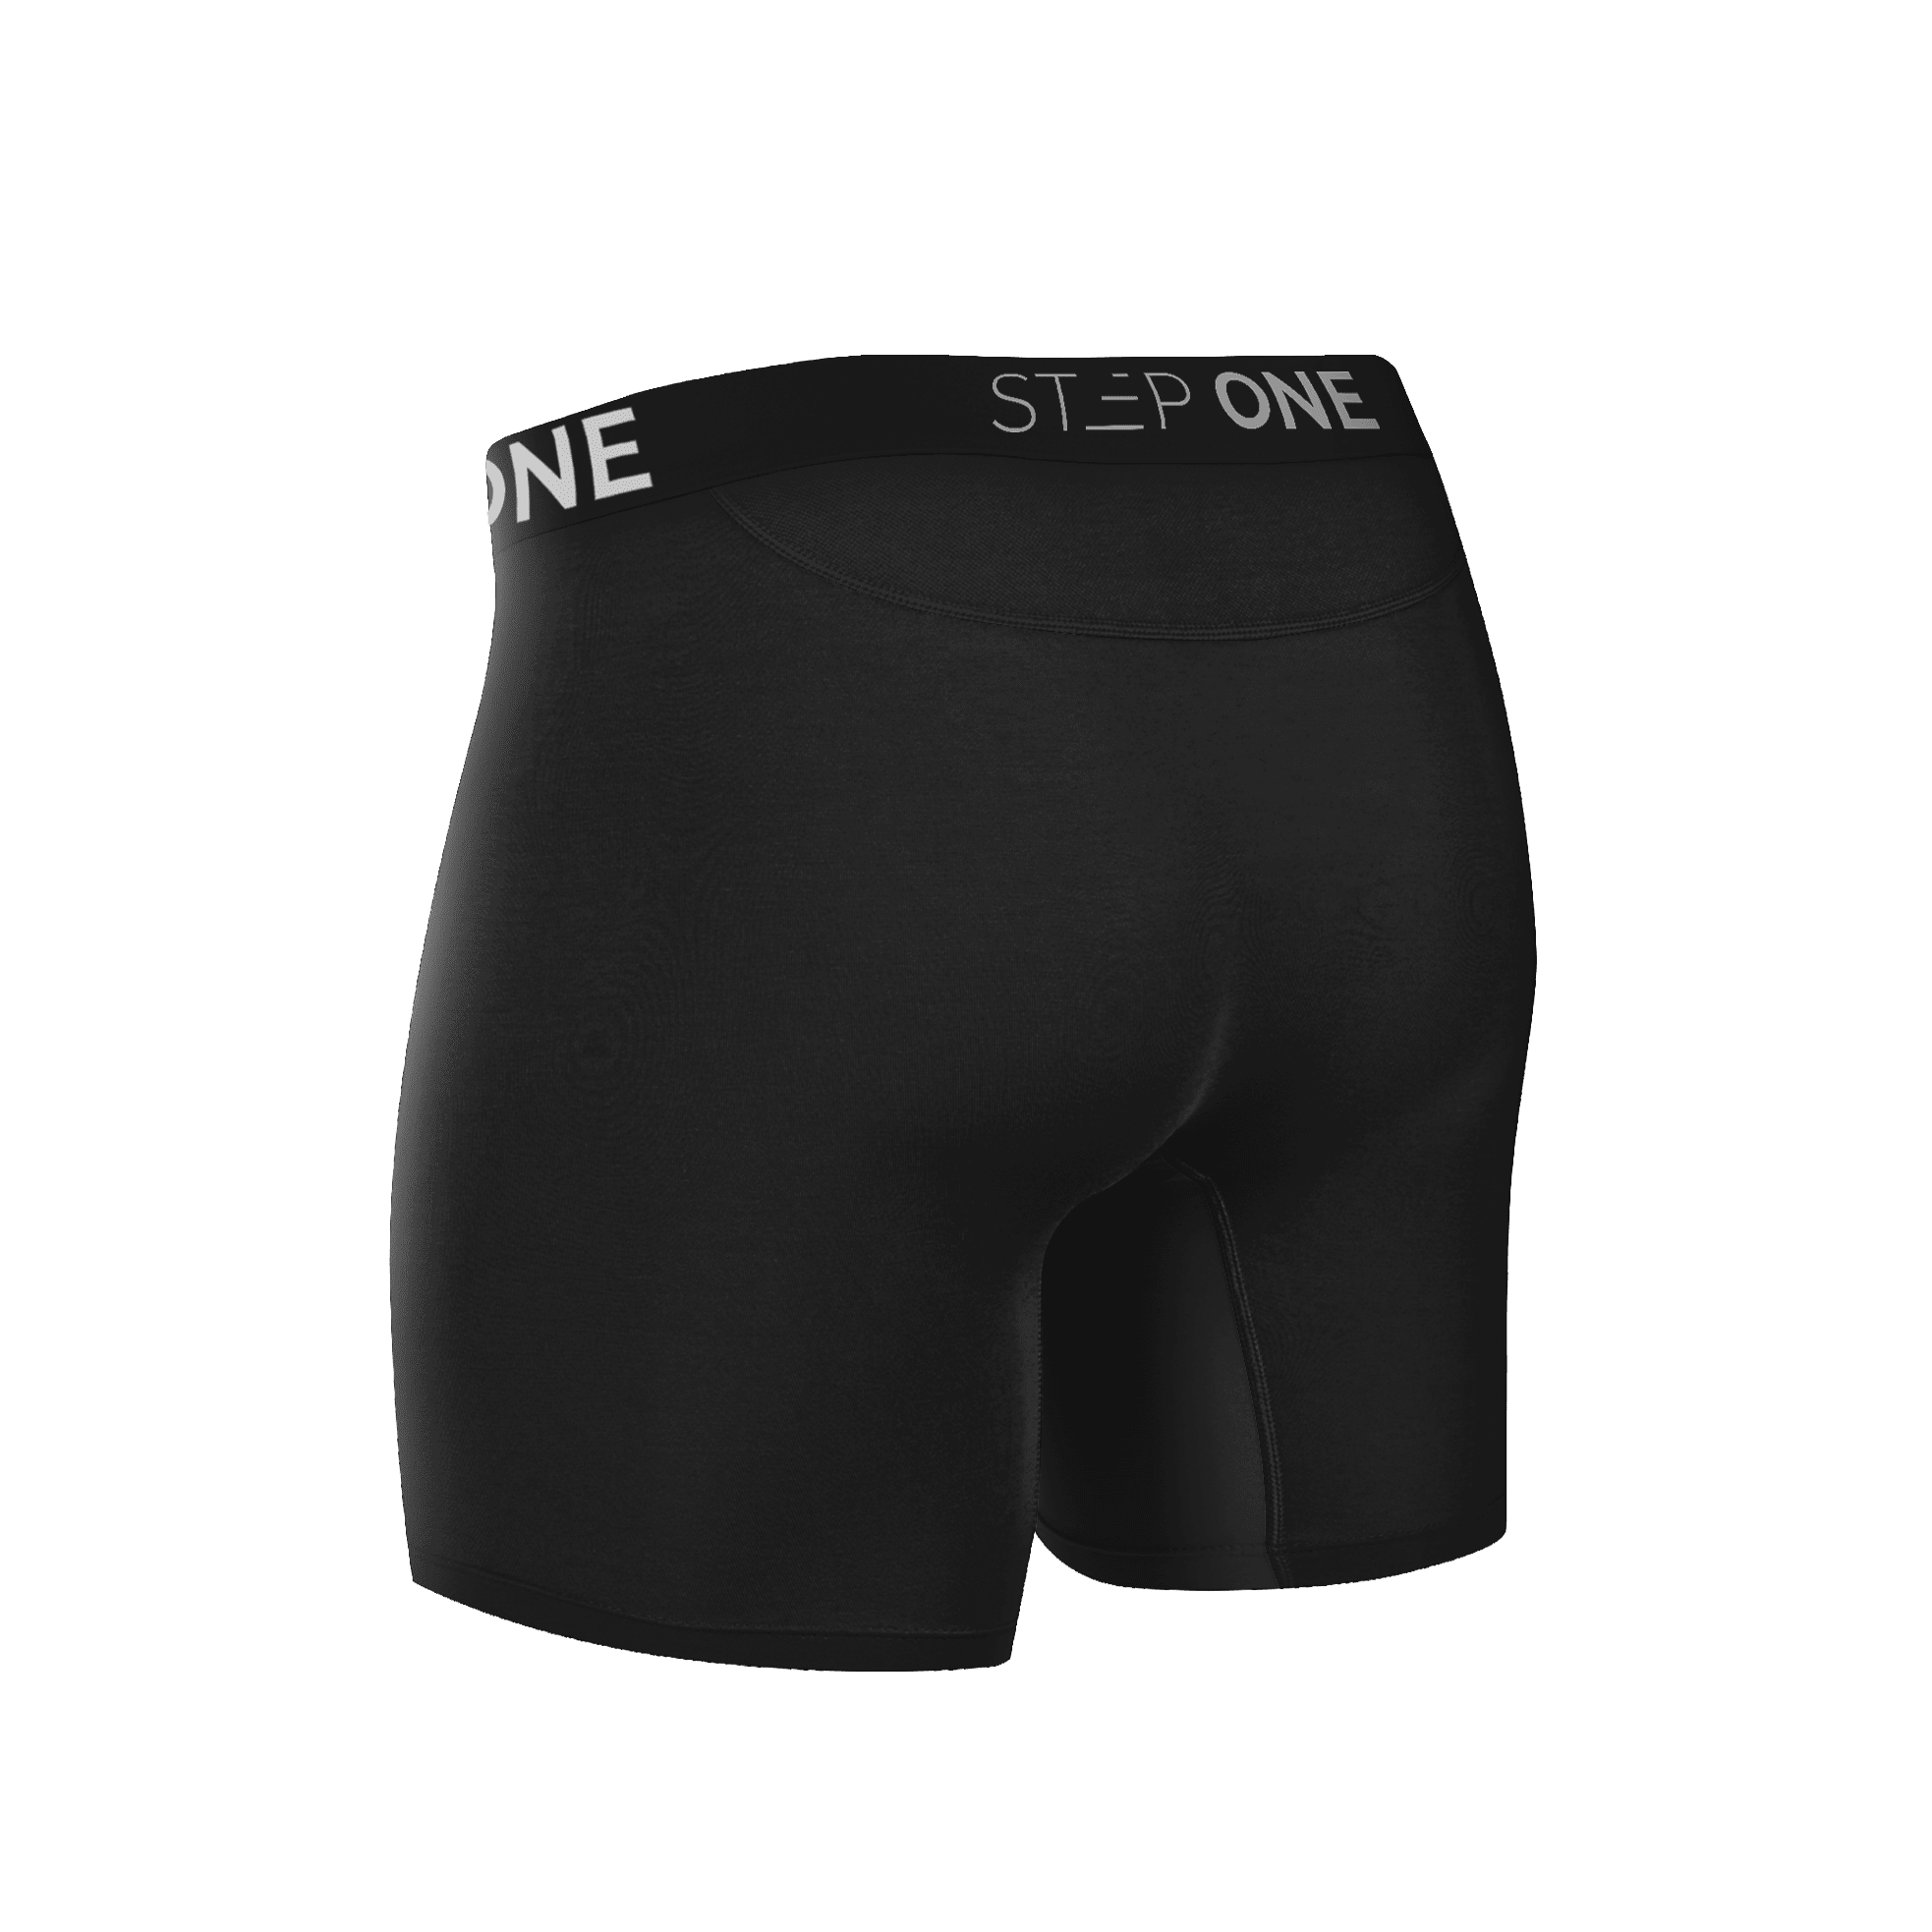 Men's Underwear  Step One Men's Underwear UK